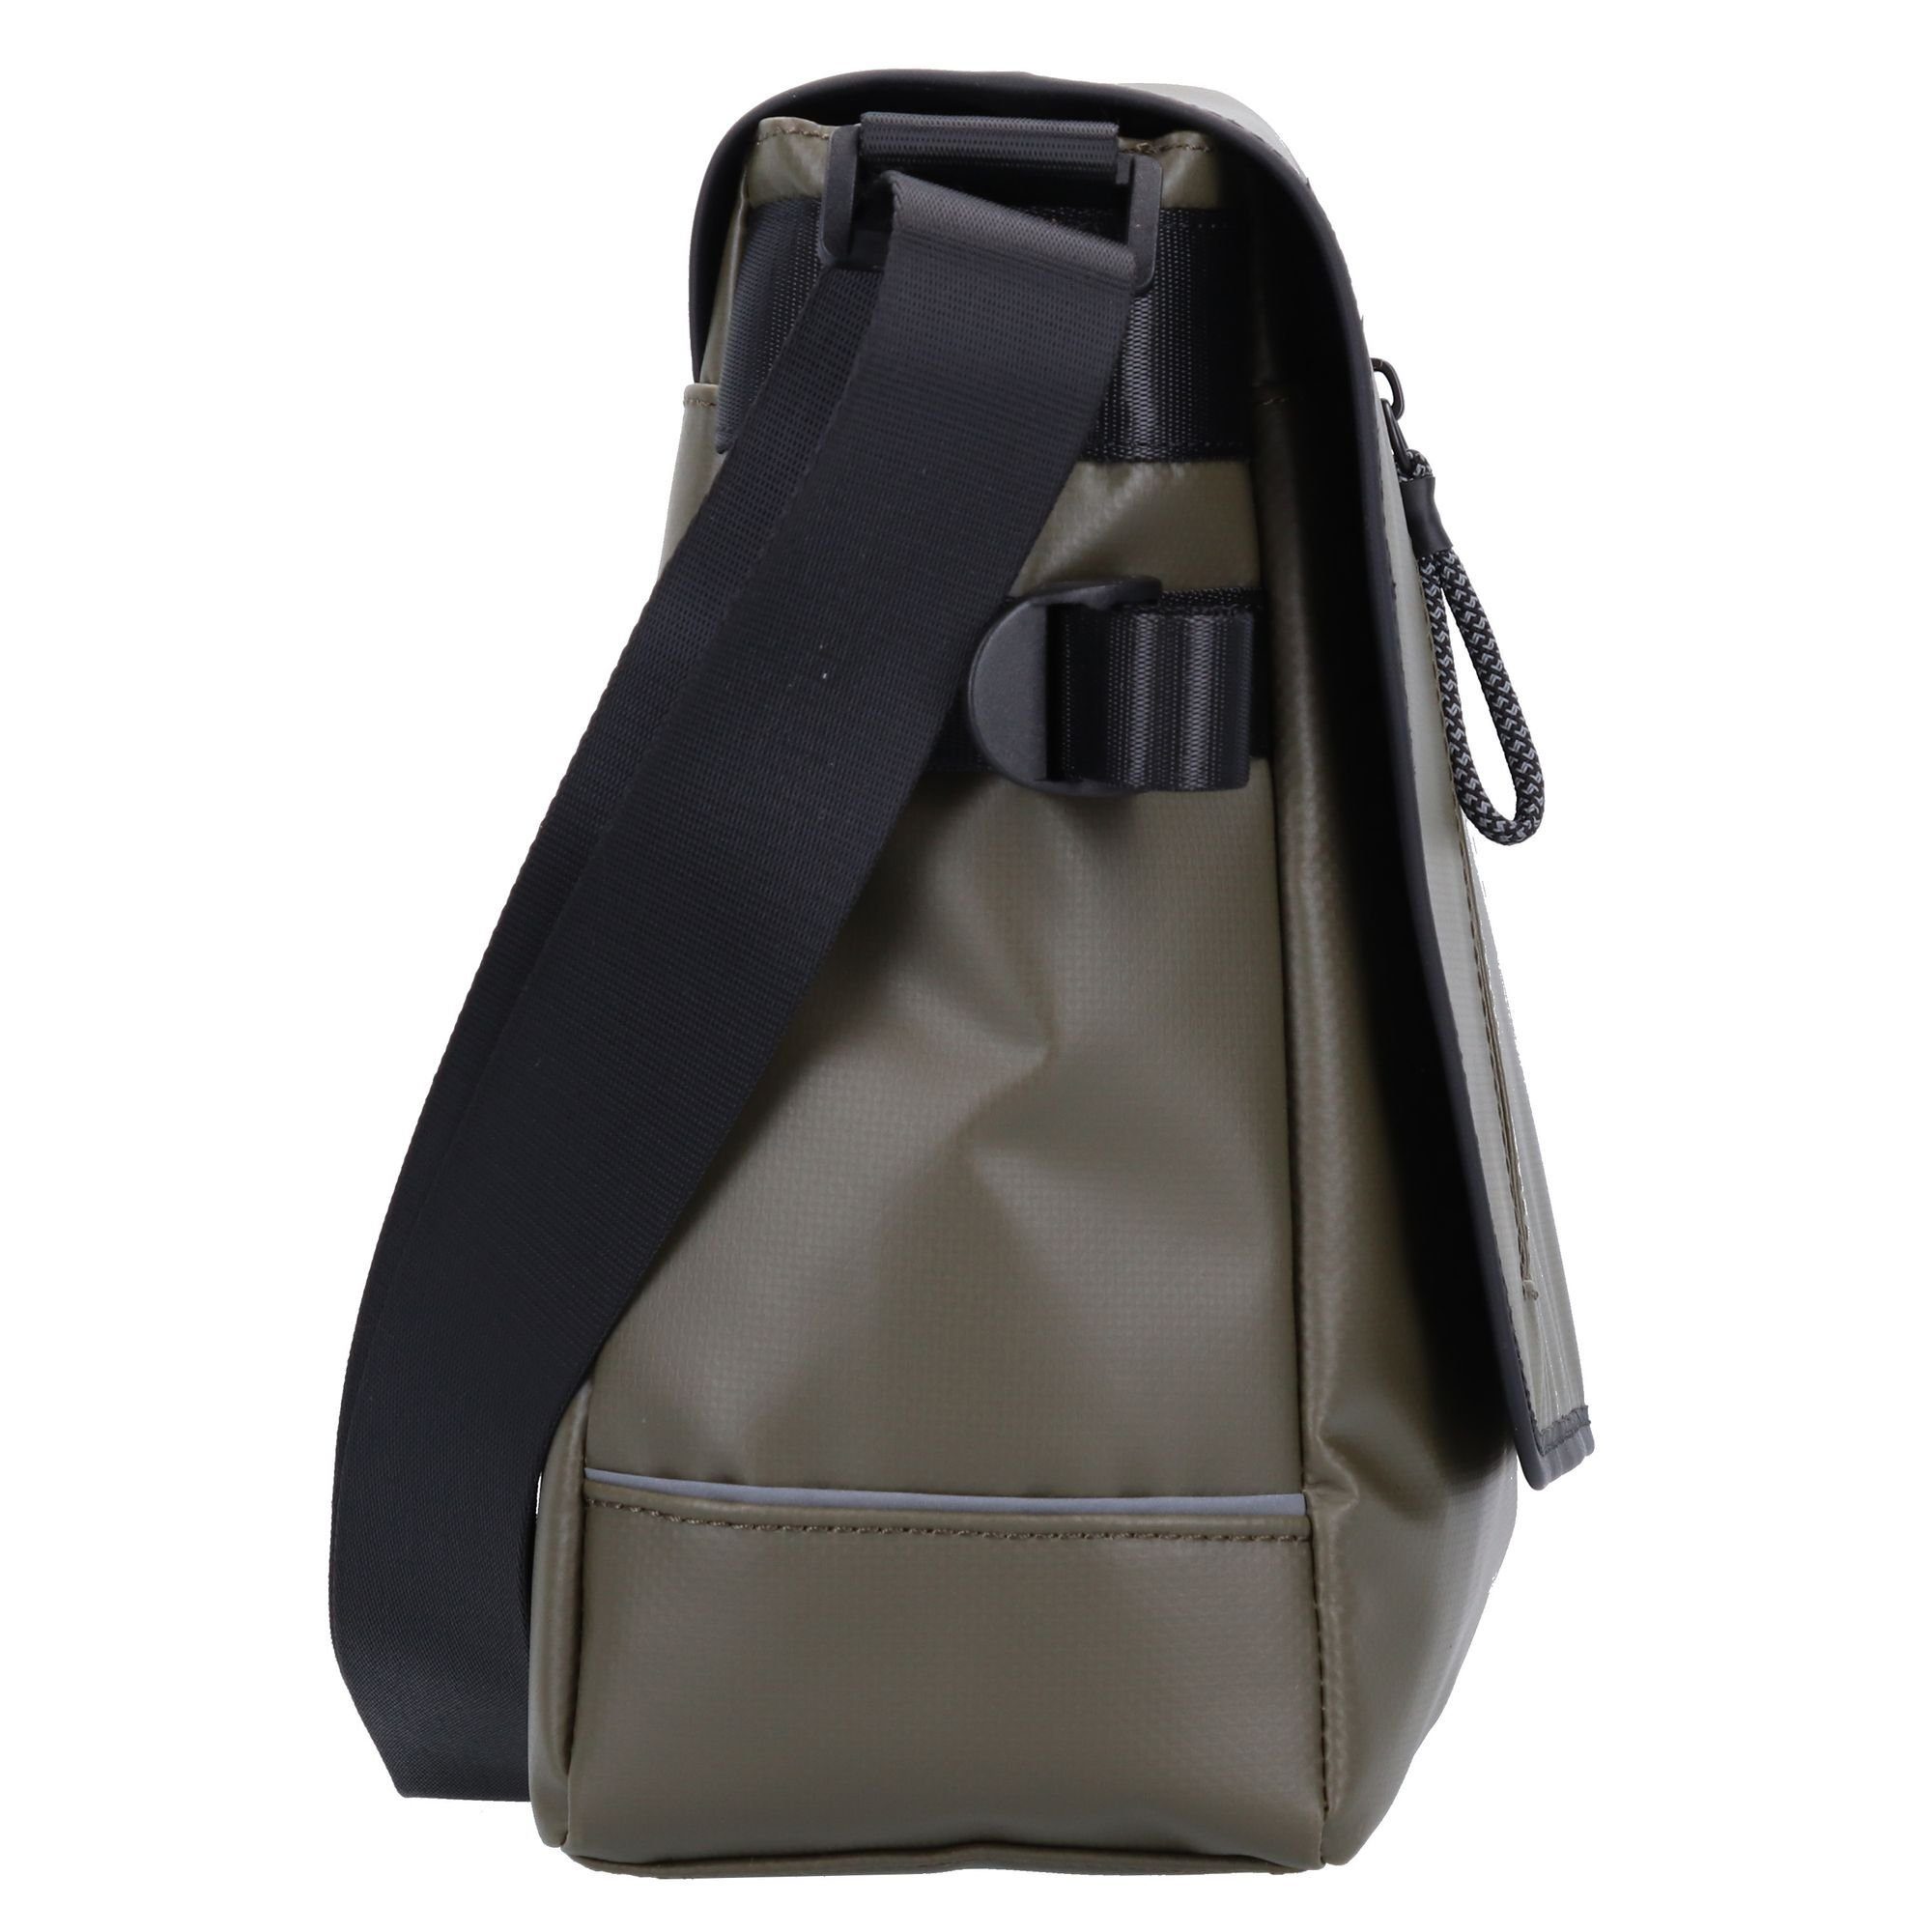 khaki 2.0, Strellson Stockwell Bag Messenger Polyester